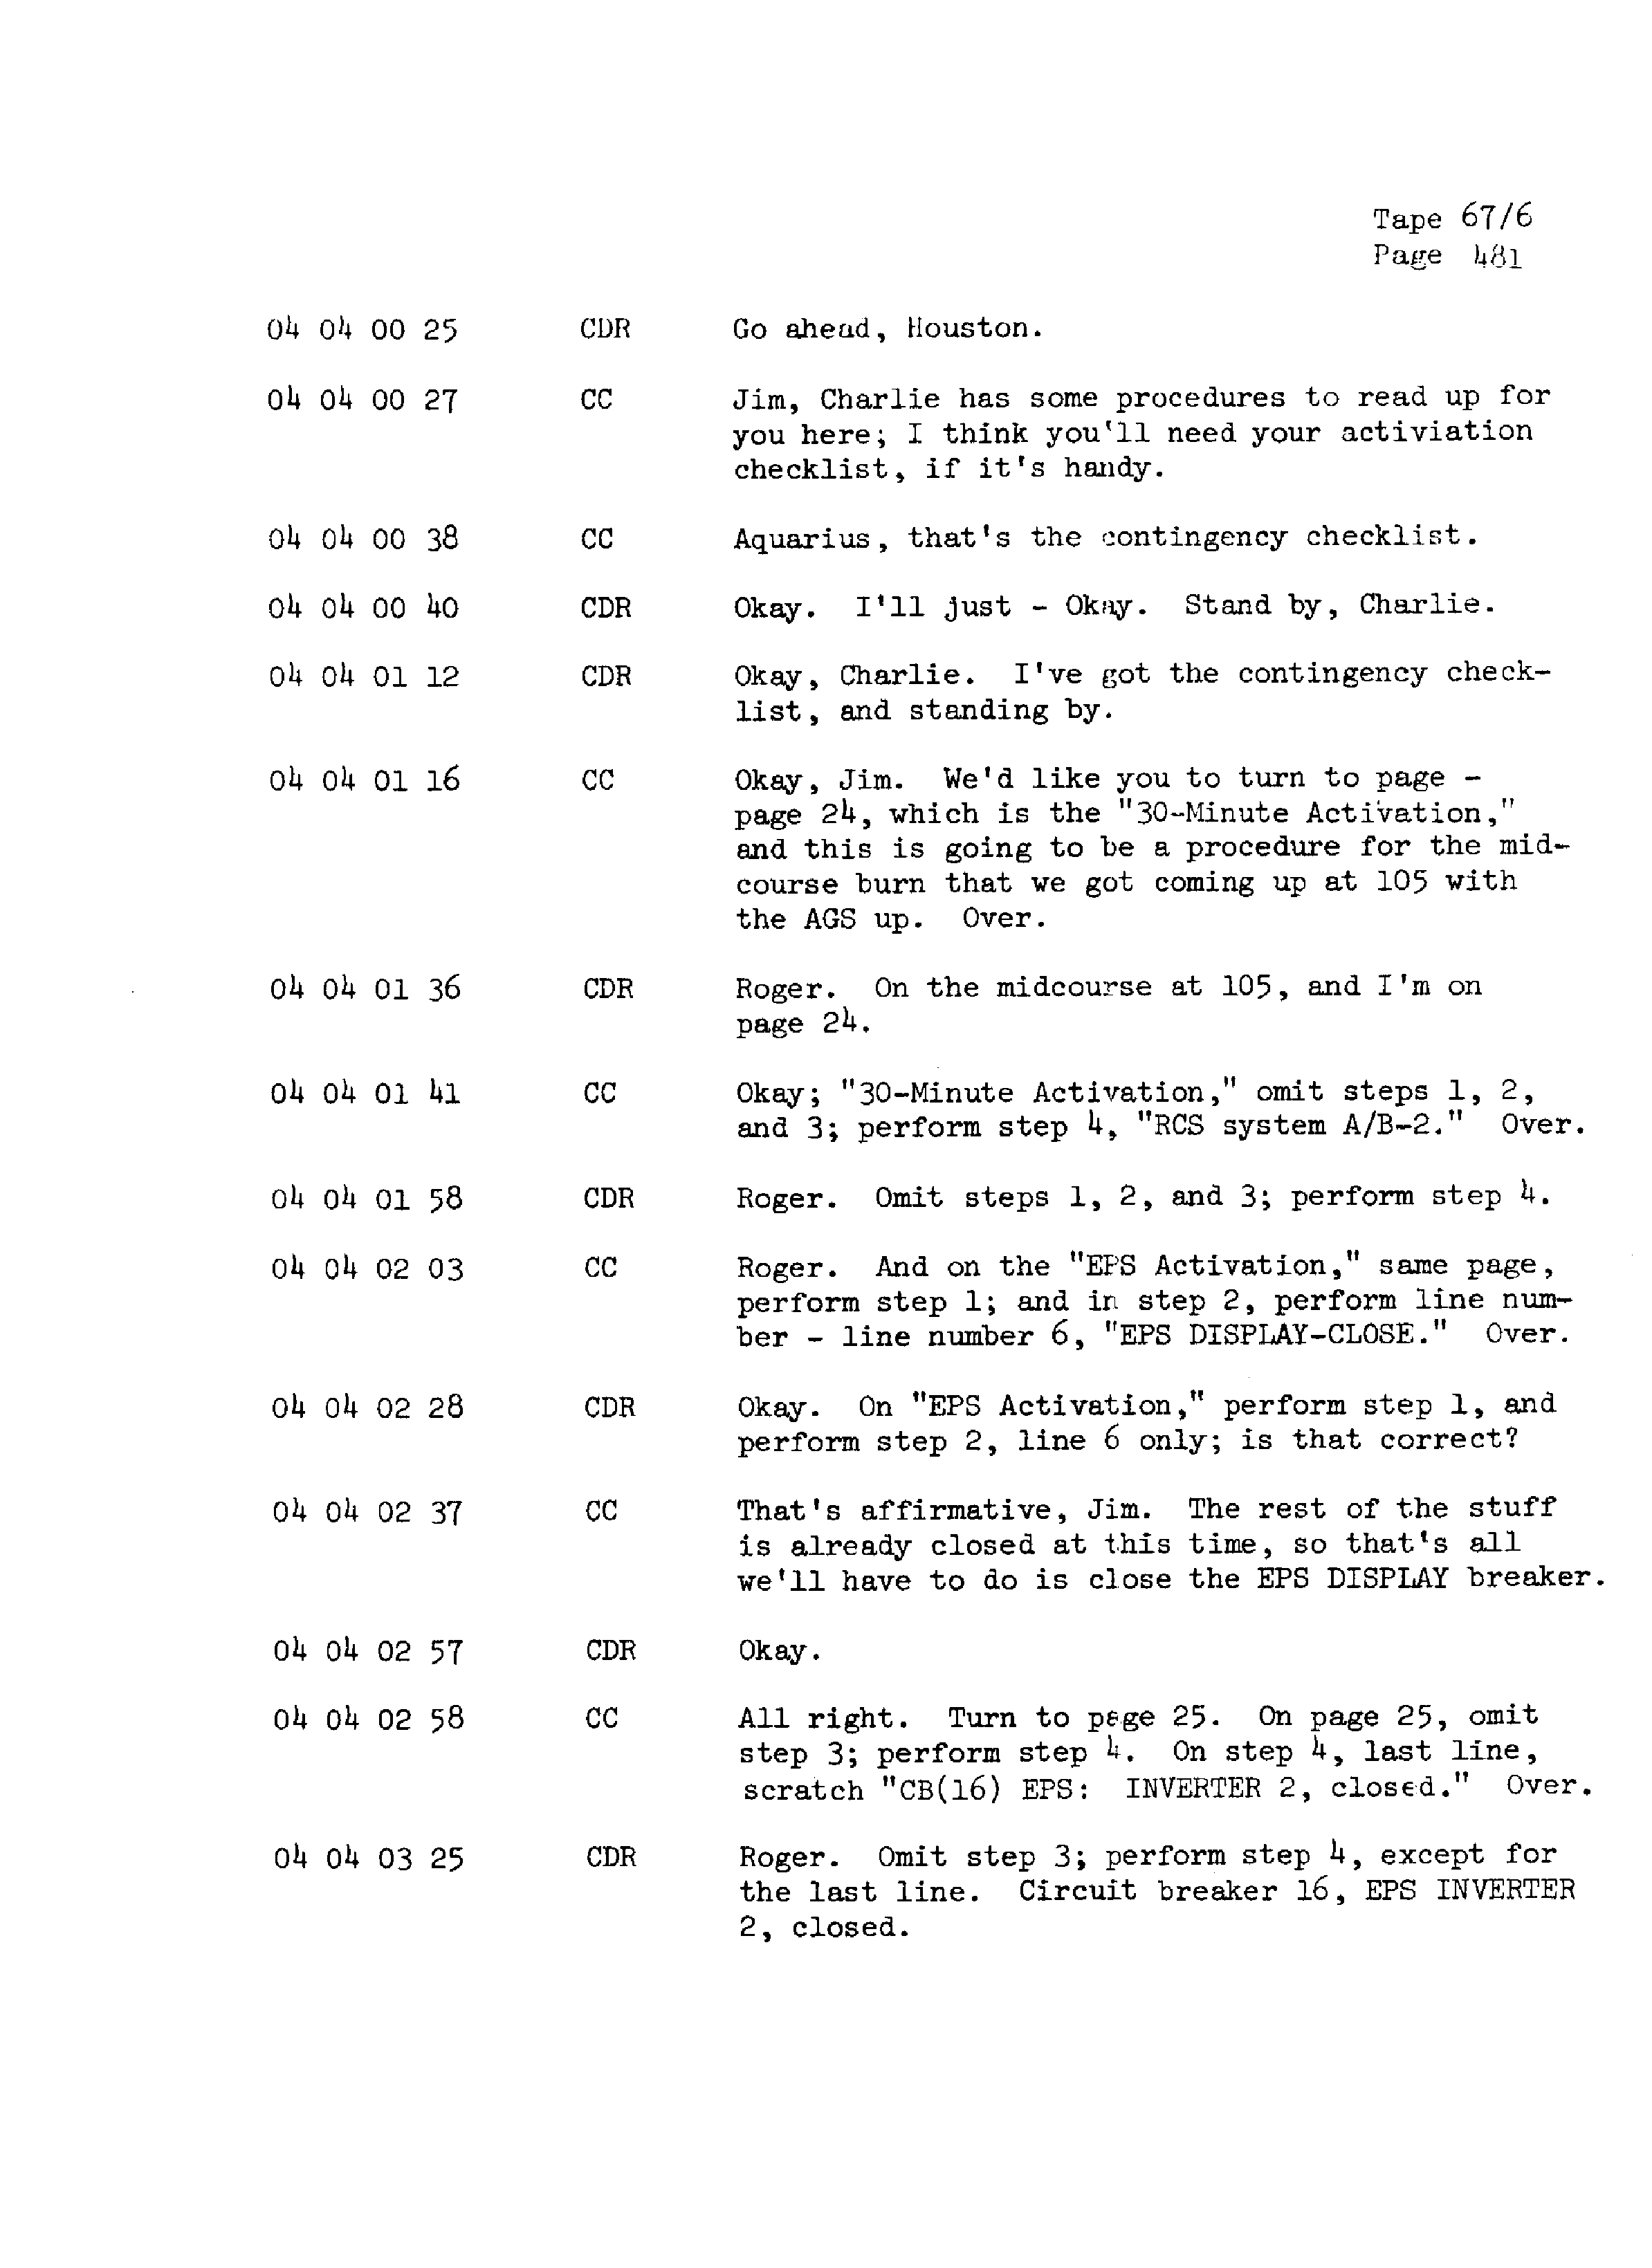 Page 488 of Apollo 13’s original transcript